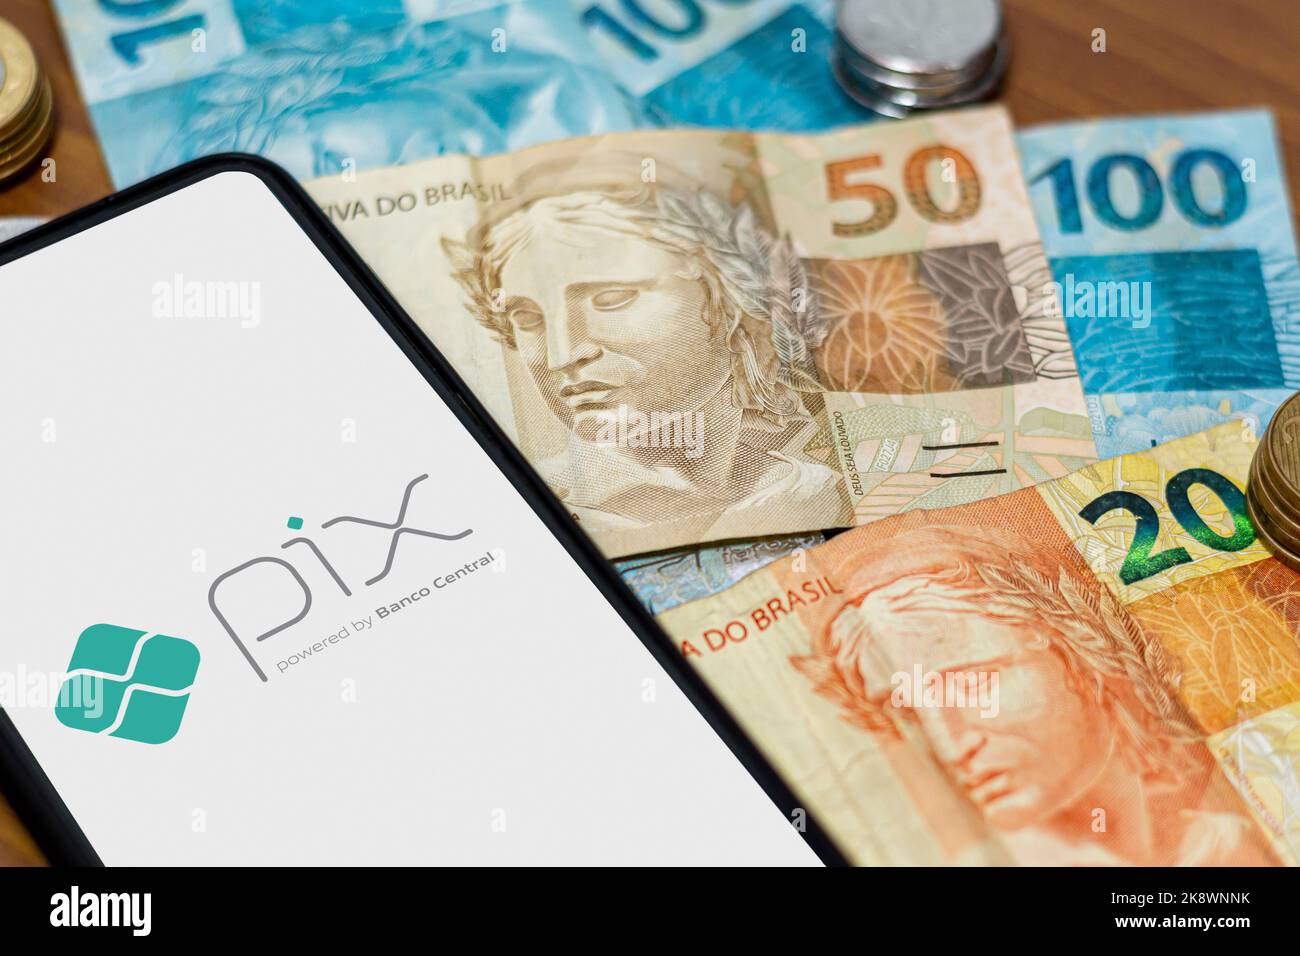 San Paolo, Brasile. 8 MARZO 2022: Logo PIX sullo schermo dello smartphone con più monete intorno. PIX è il nuovo sistema di pagamento e trasferimento della Brazilia Foto Stock